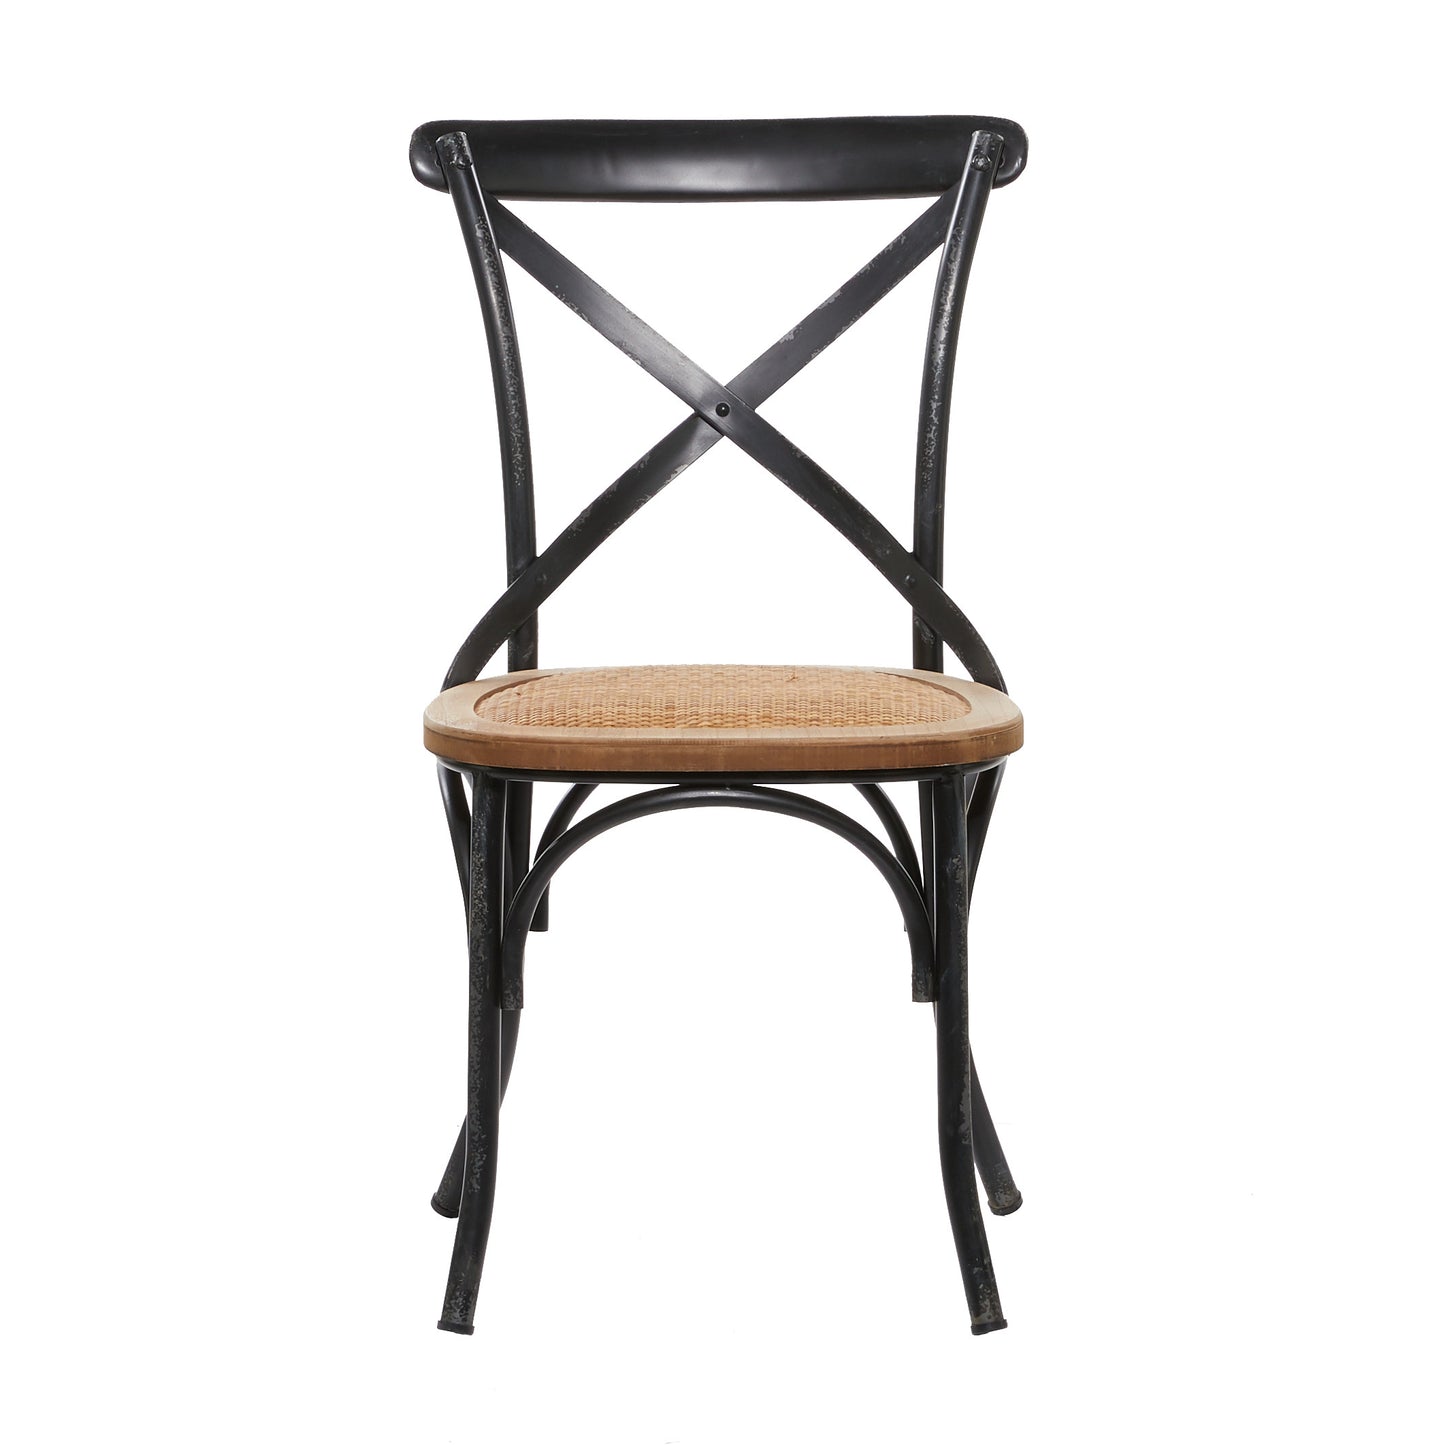 Wood & Metal Cross Back Chair, Black